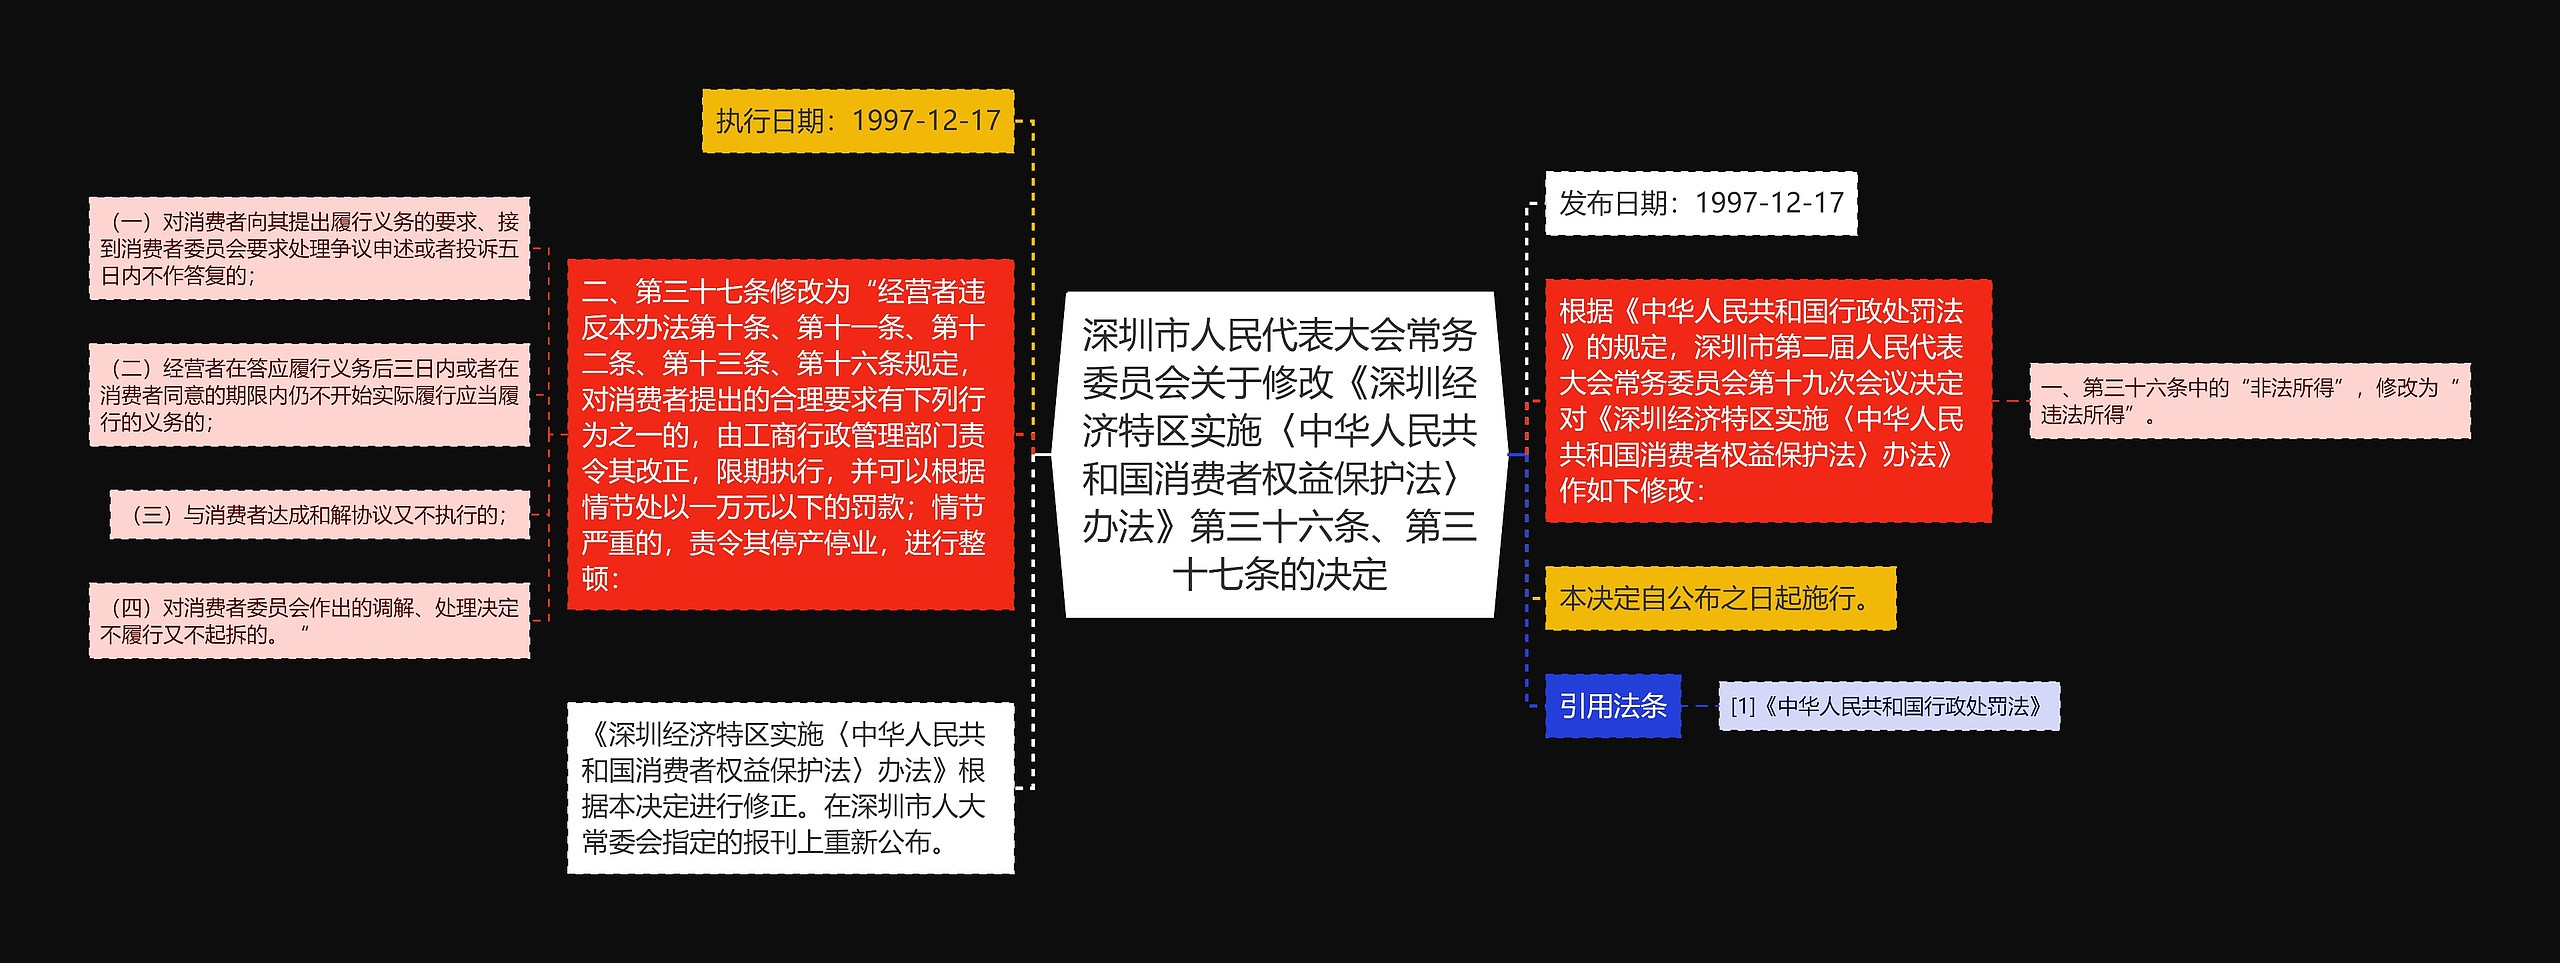 深圳市人民代表大会常务委员会关于修改《深圳经济特区实施〈中华人民共和国消费者权益保护法〉办法》第三十六条、第三十七条的决定